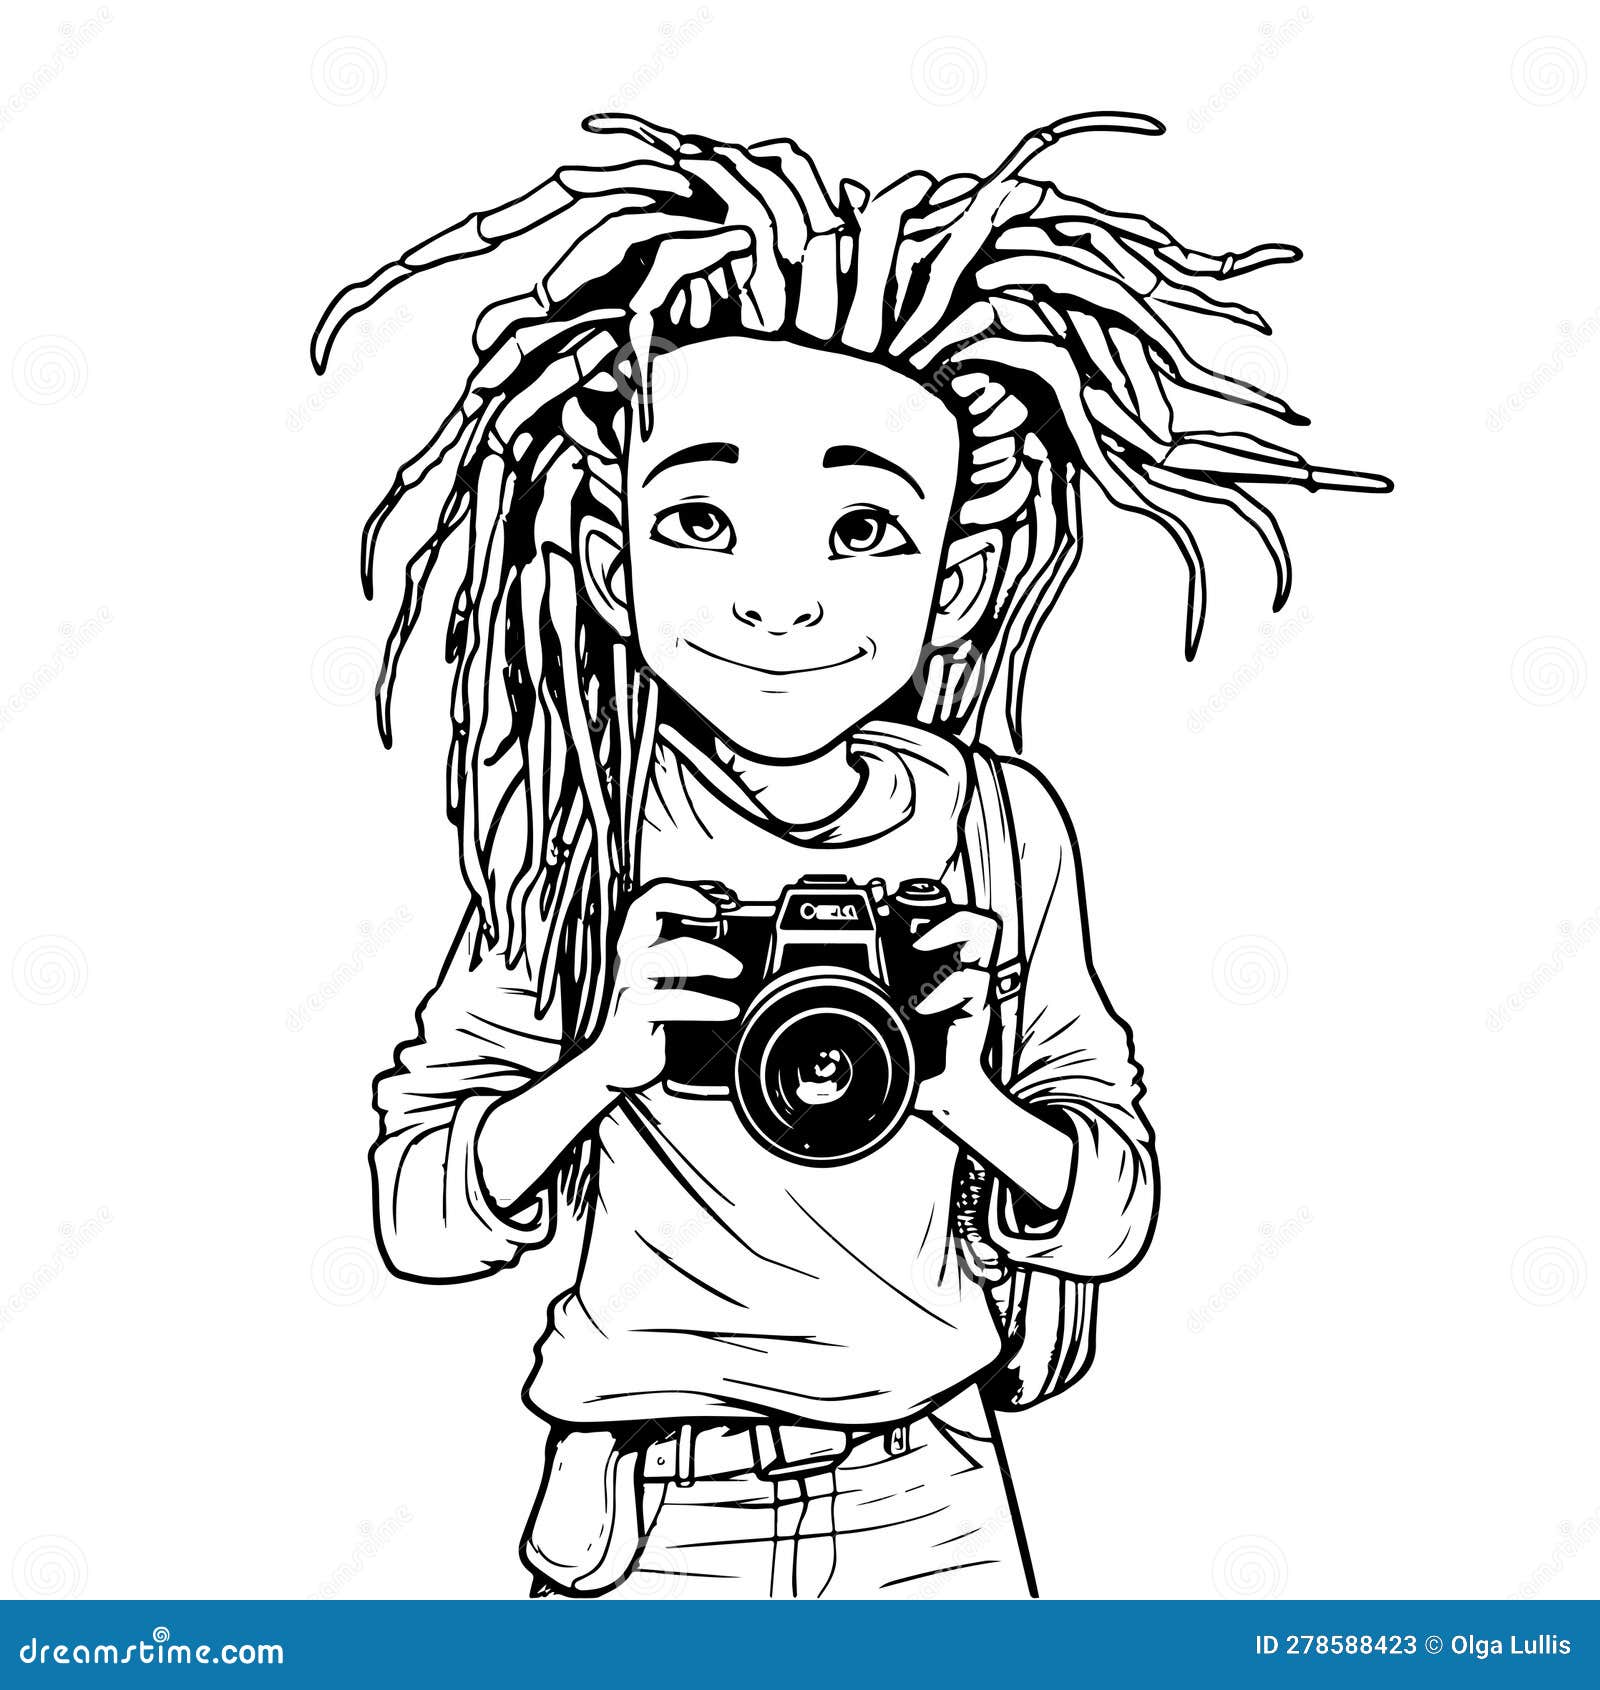 Boy Photographer With Dreads, Black Line Art Cartoon Vector ...